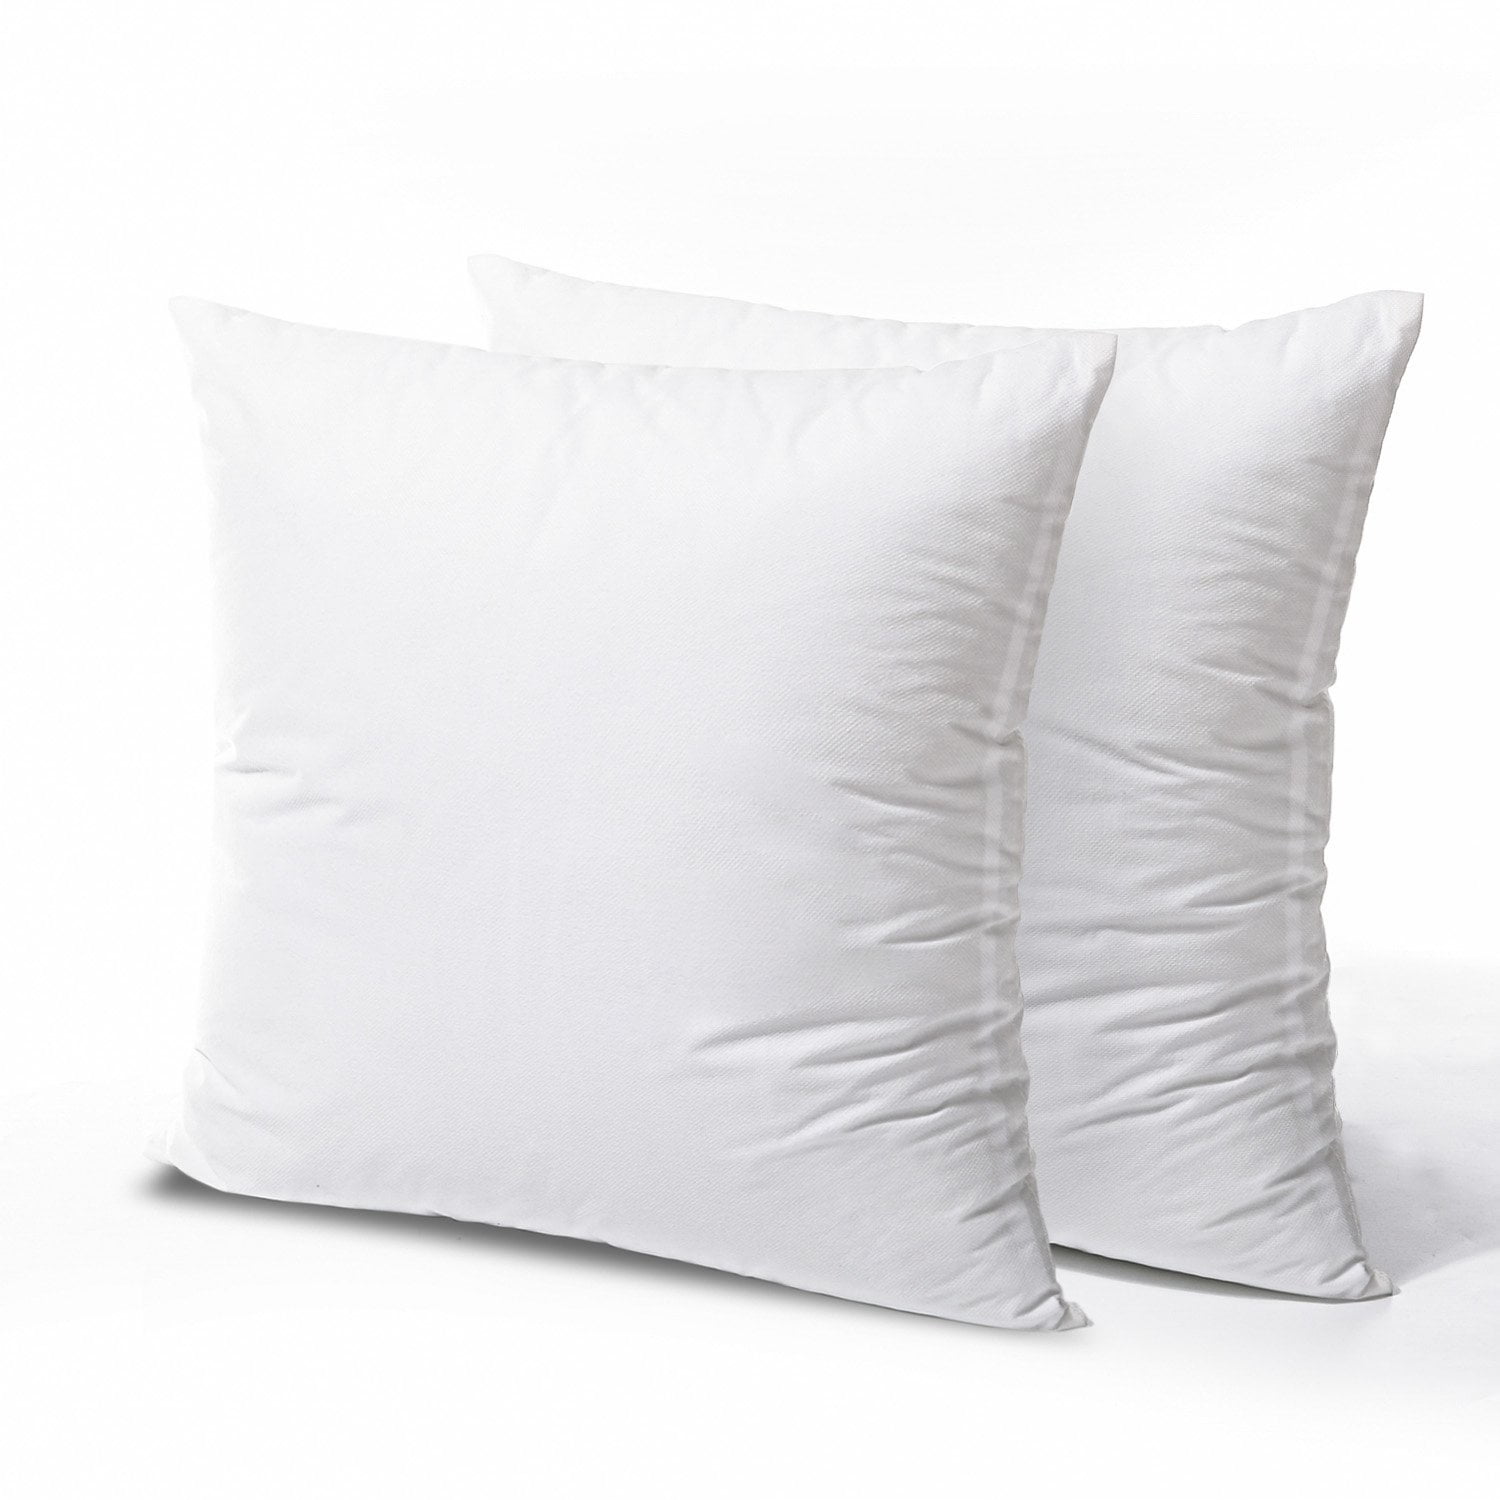  KAKABELL Throw Pillow Inserts Waterproof 18X18 Set of